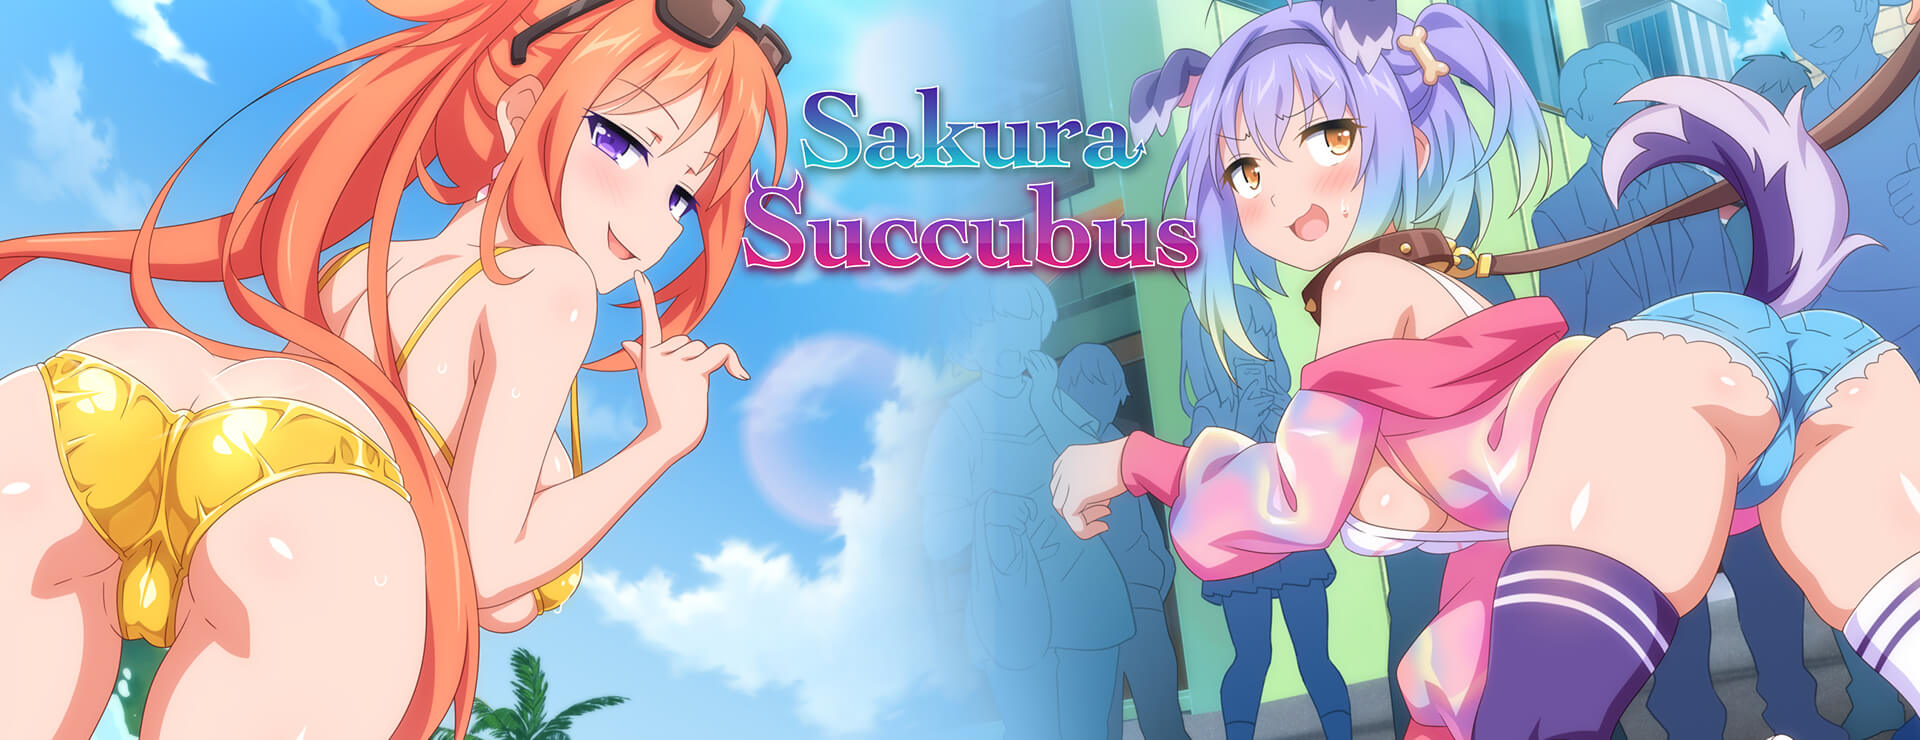 Sakura Succubus - Japanisches Adventure Spiel